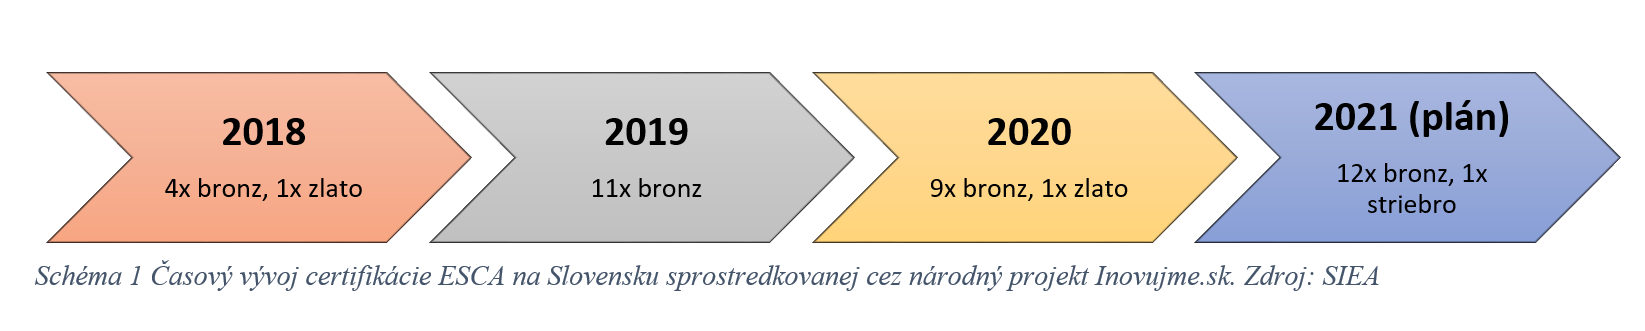 Časový vývoj certifikácie ESCA na SLovensku sprostredkovanej cez národný projket Inovujme.sk